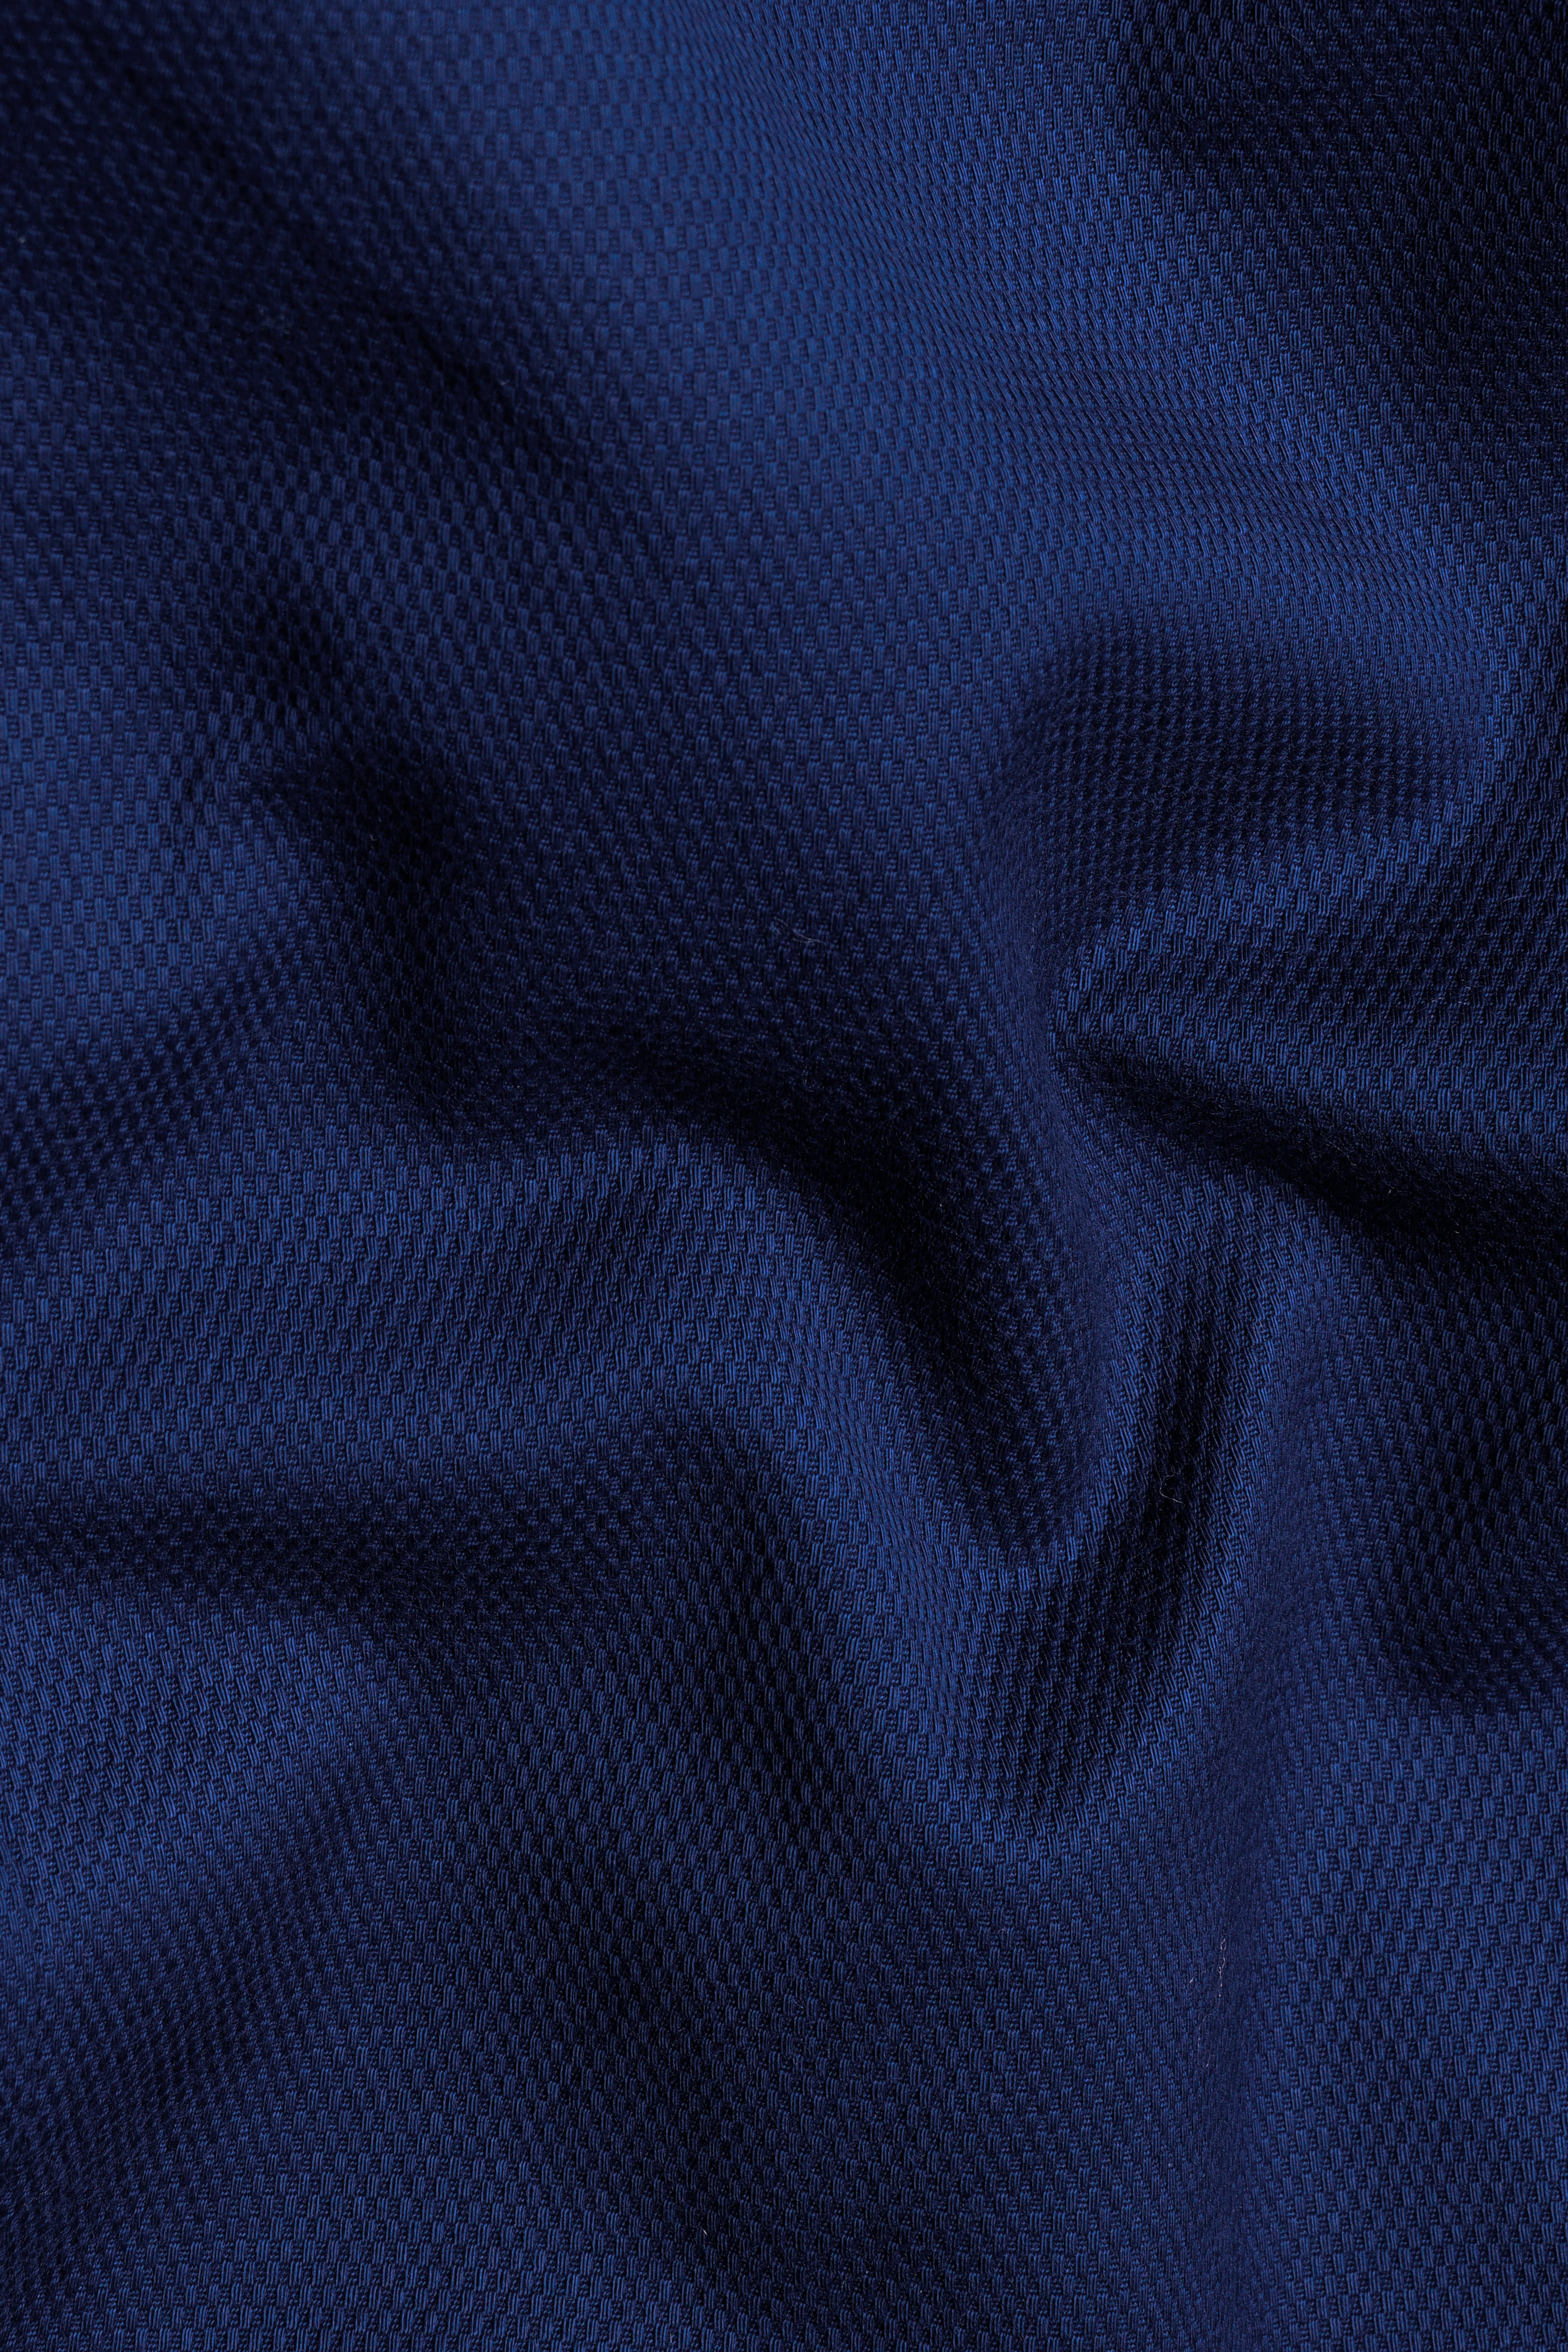 Downriver Blue Wool Rich Pant T3056-28, T3056-30, T3056-32, T3056-34, T3056-36, T3056-38, T3056-40, T3056-42, T3056-44